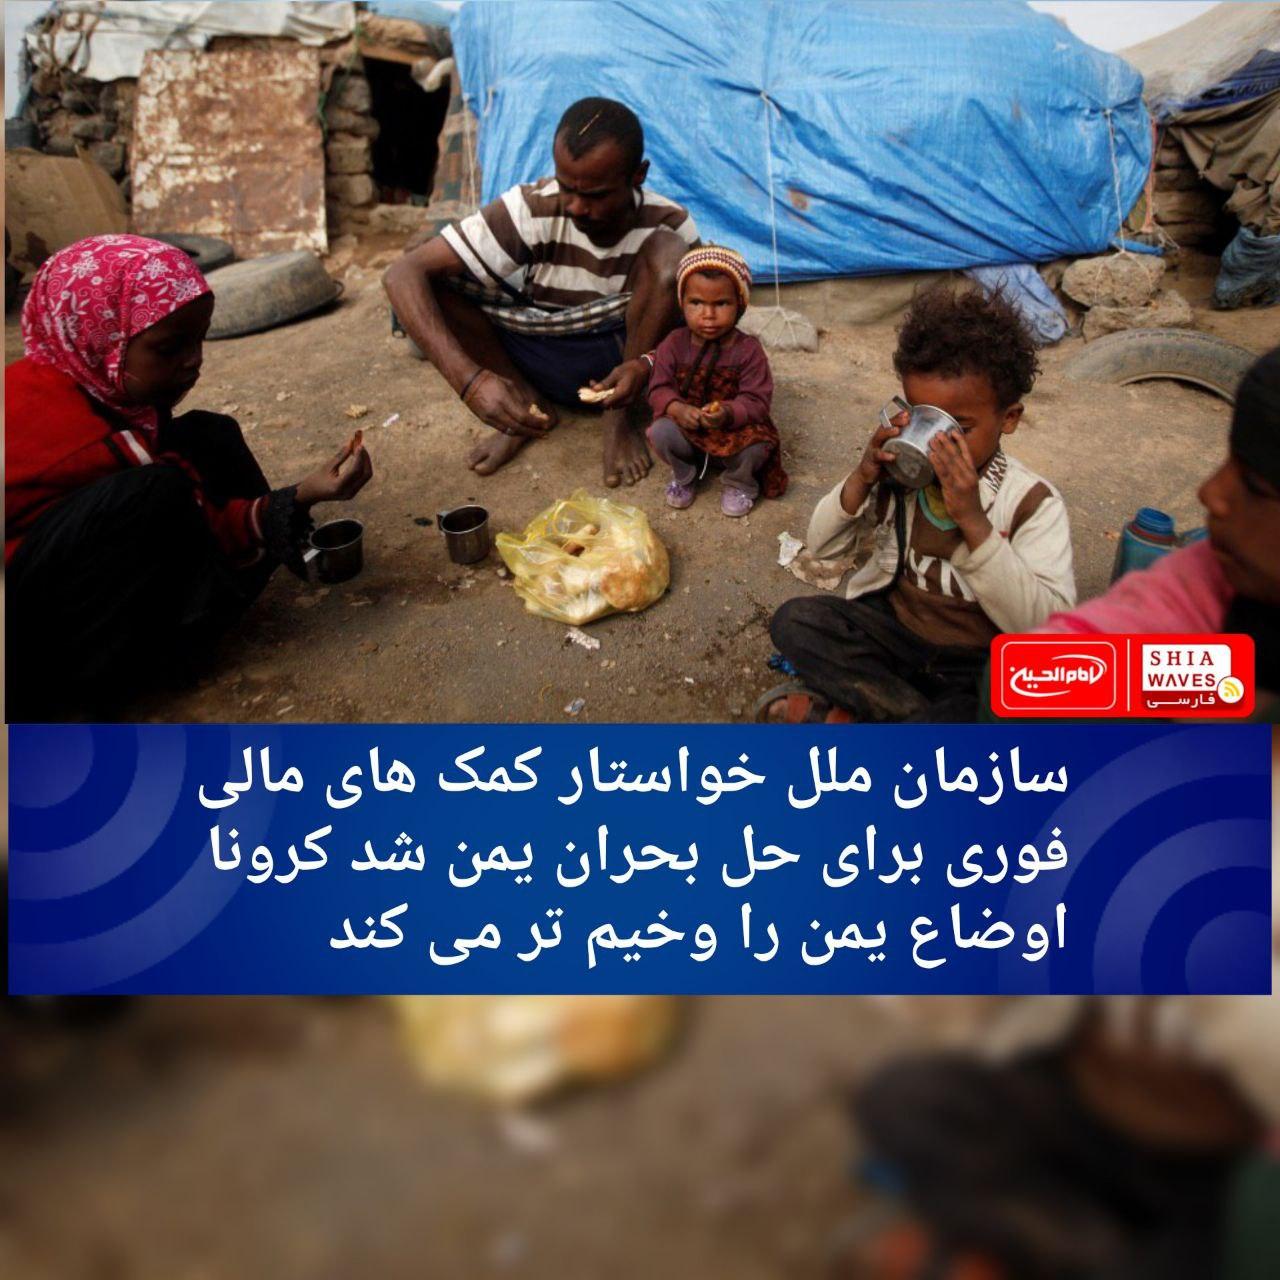 تصویر سازمان ملل خواستار کمک های مالی فوری برای حل بحران یمن شد/ کرونا اوضاع یمن را وخیم تر می کند